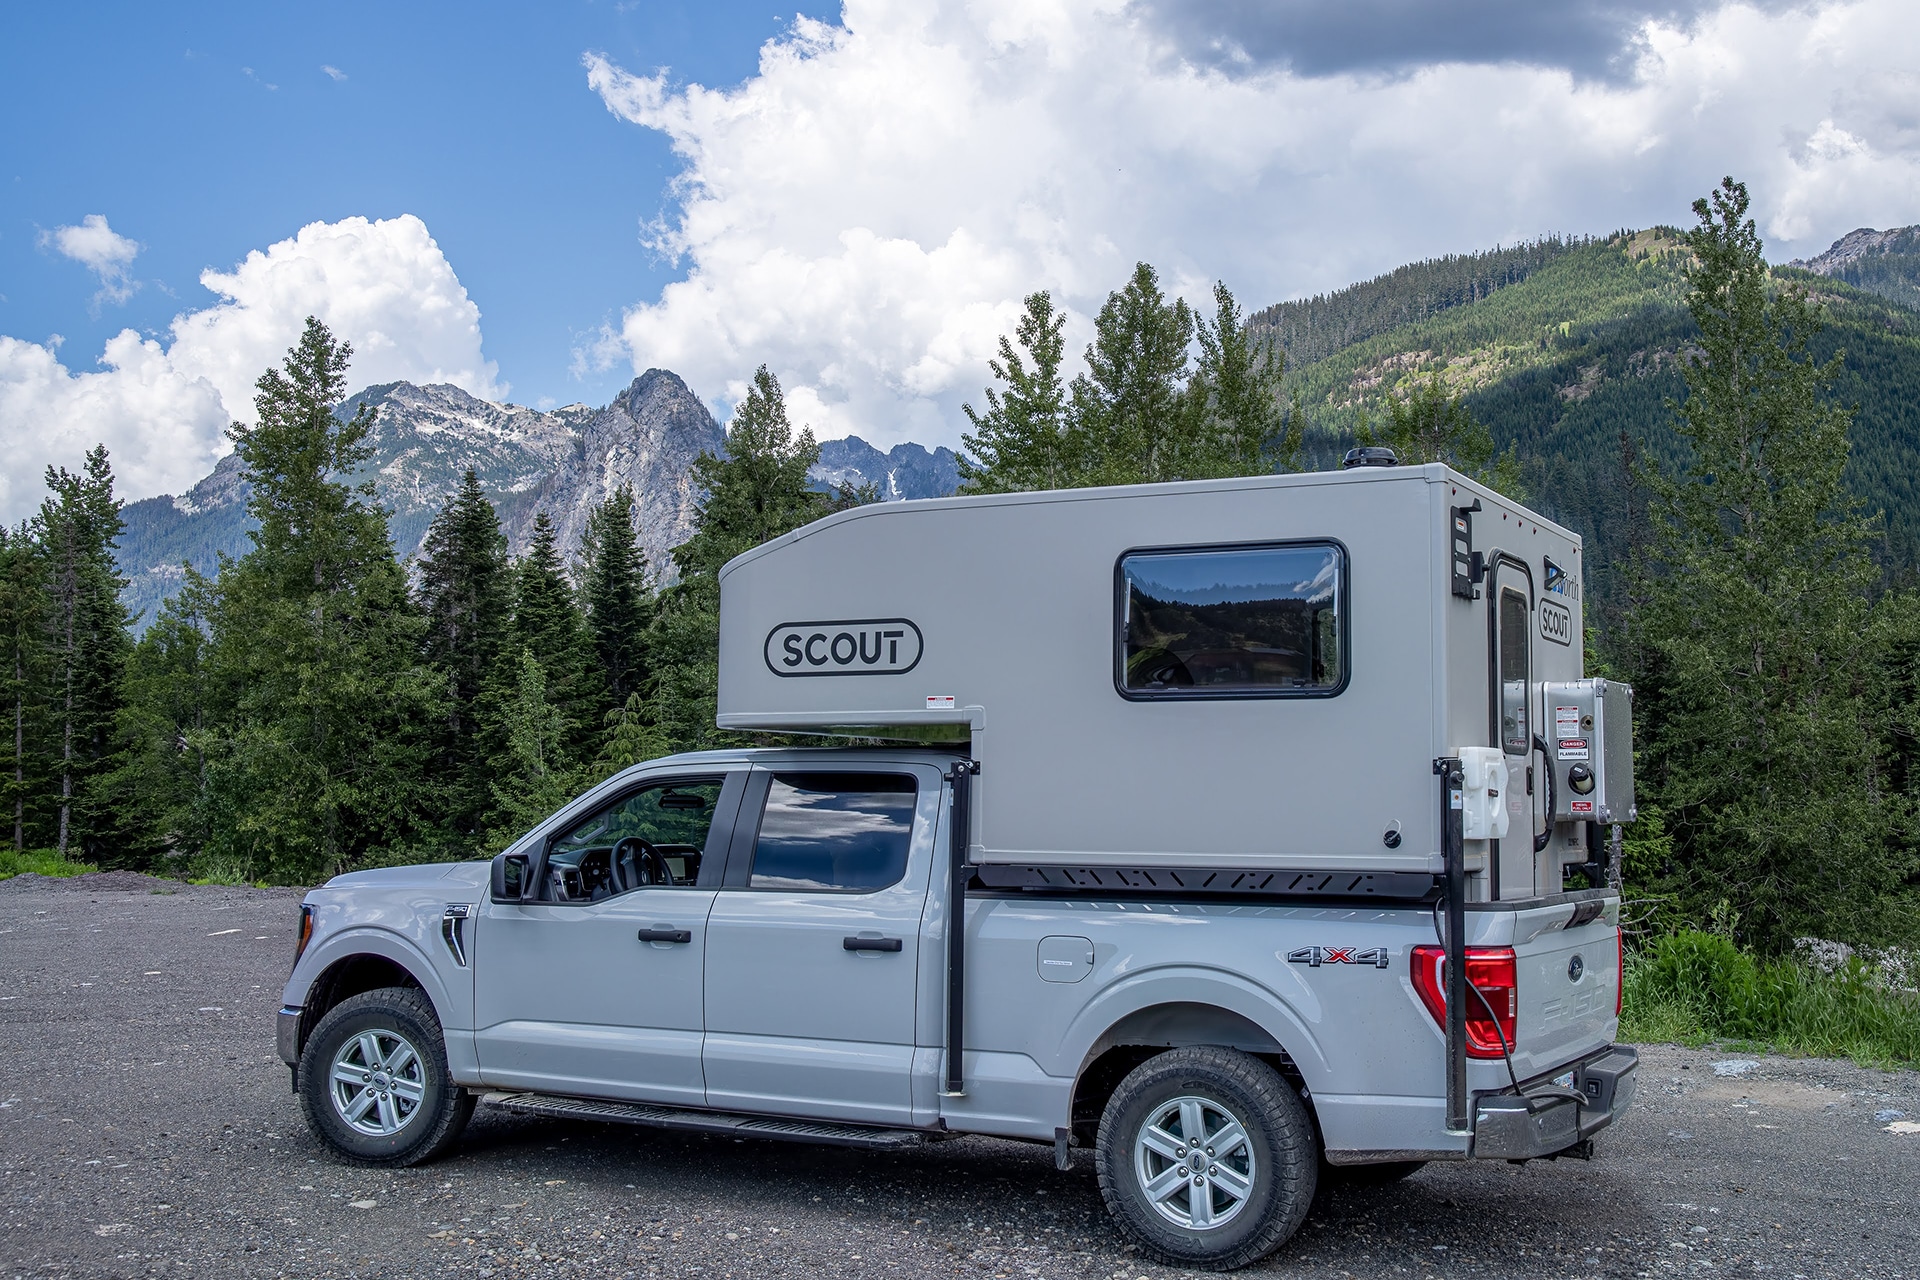 Scout Adventure Truck Camper 4x4 - GoNorth Car & RV Rental